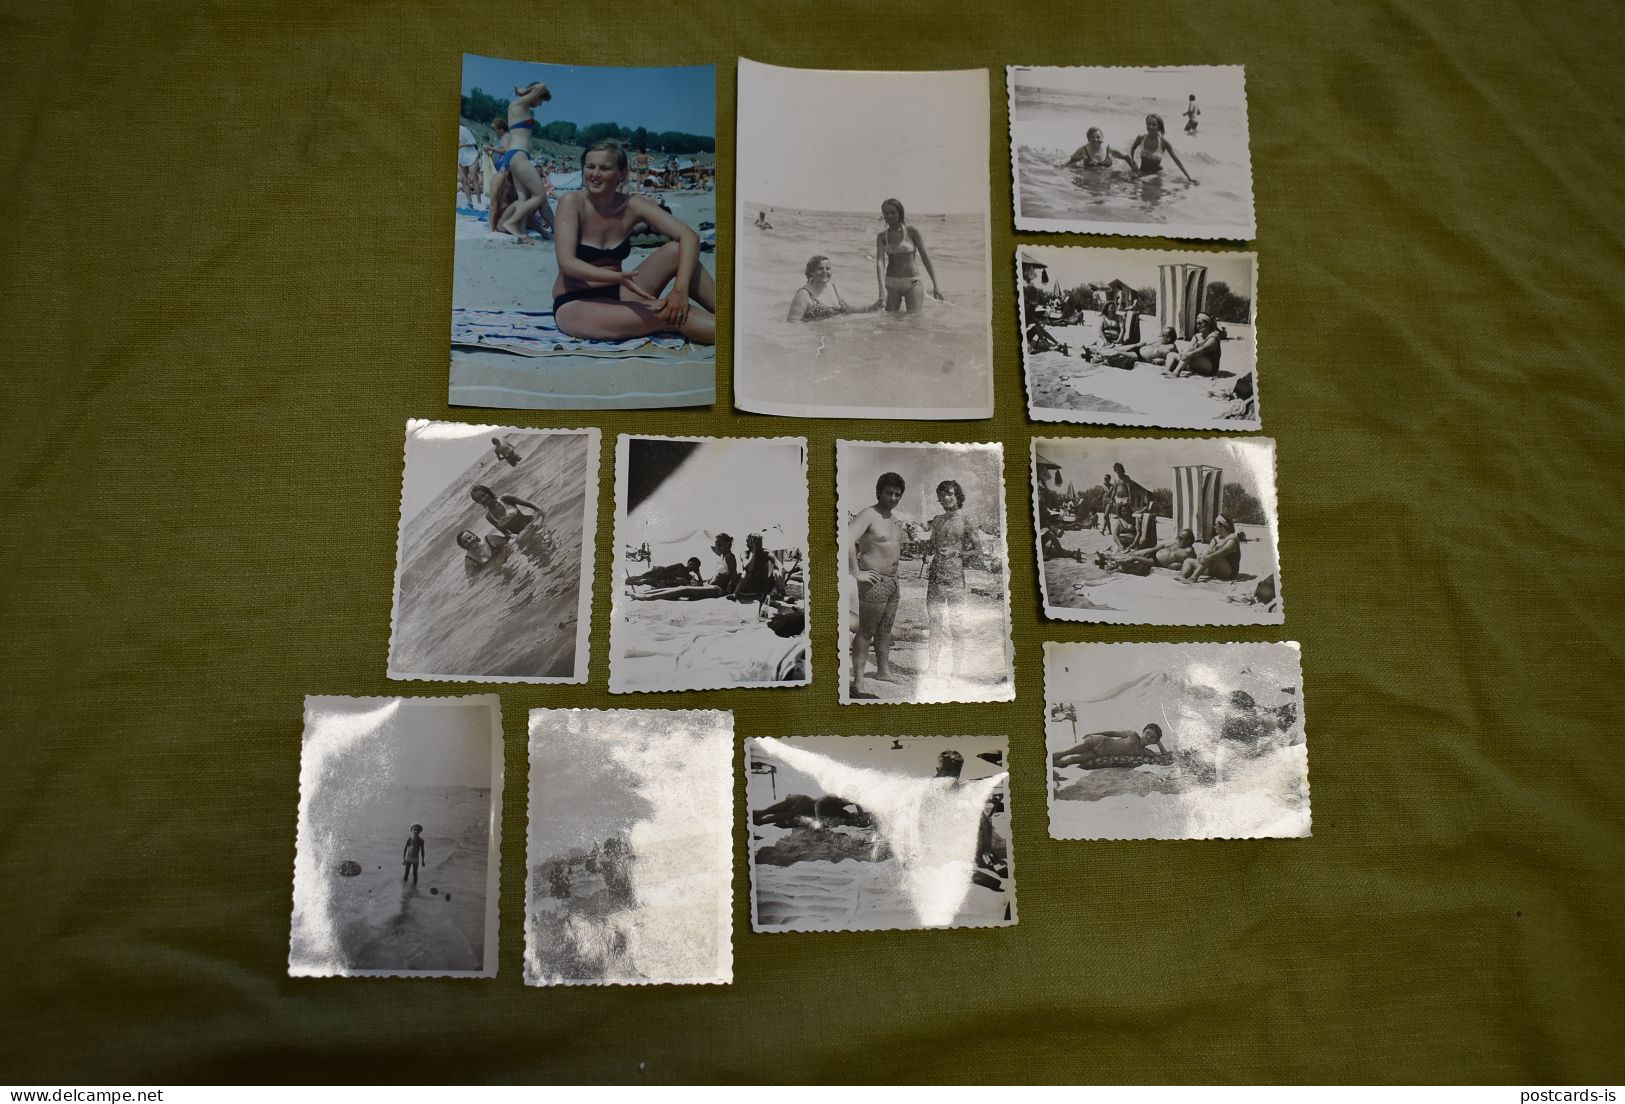 18x photos beach Marea Neagra Romania half-naked women sunbathing 1970-1990